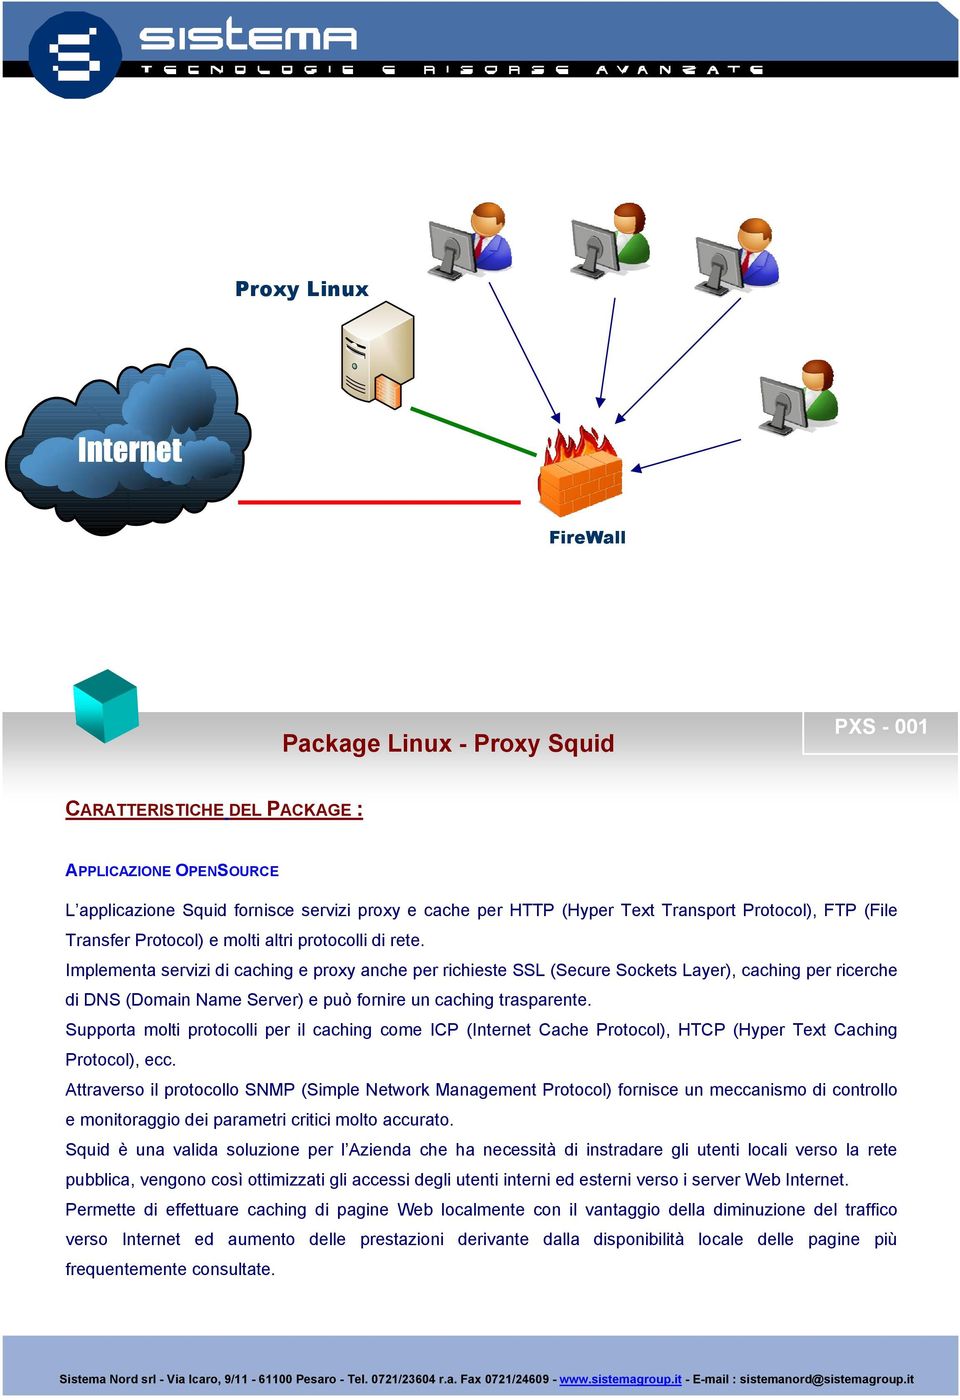 Implementa servizi di caching e proxy anche per richieste SSL (Secure Sockets Layer), caching per ricerche di DNS (Domain Name Server) e può fornire un caching trasparente.